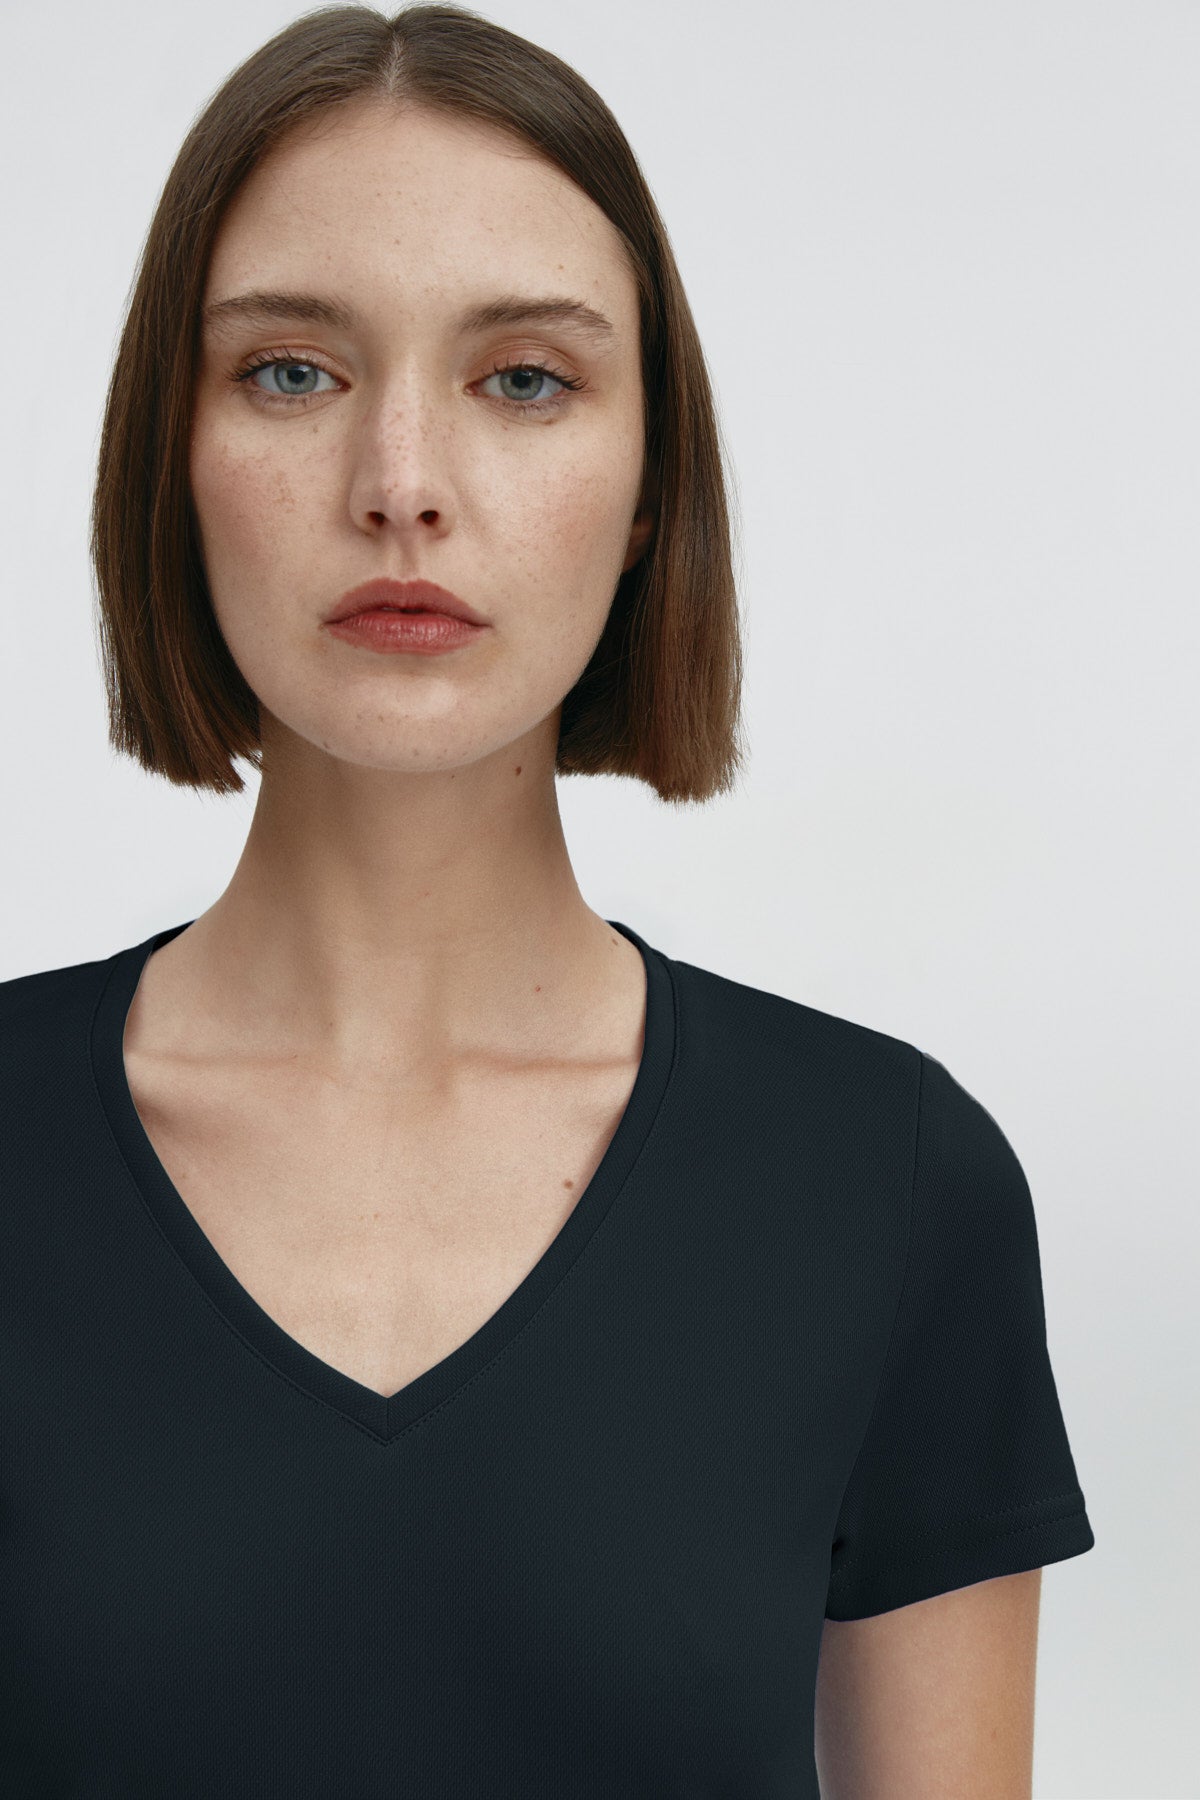 Camiseta para mujer de manga corta con escote pico color negro, básico. Foto retrato